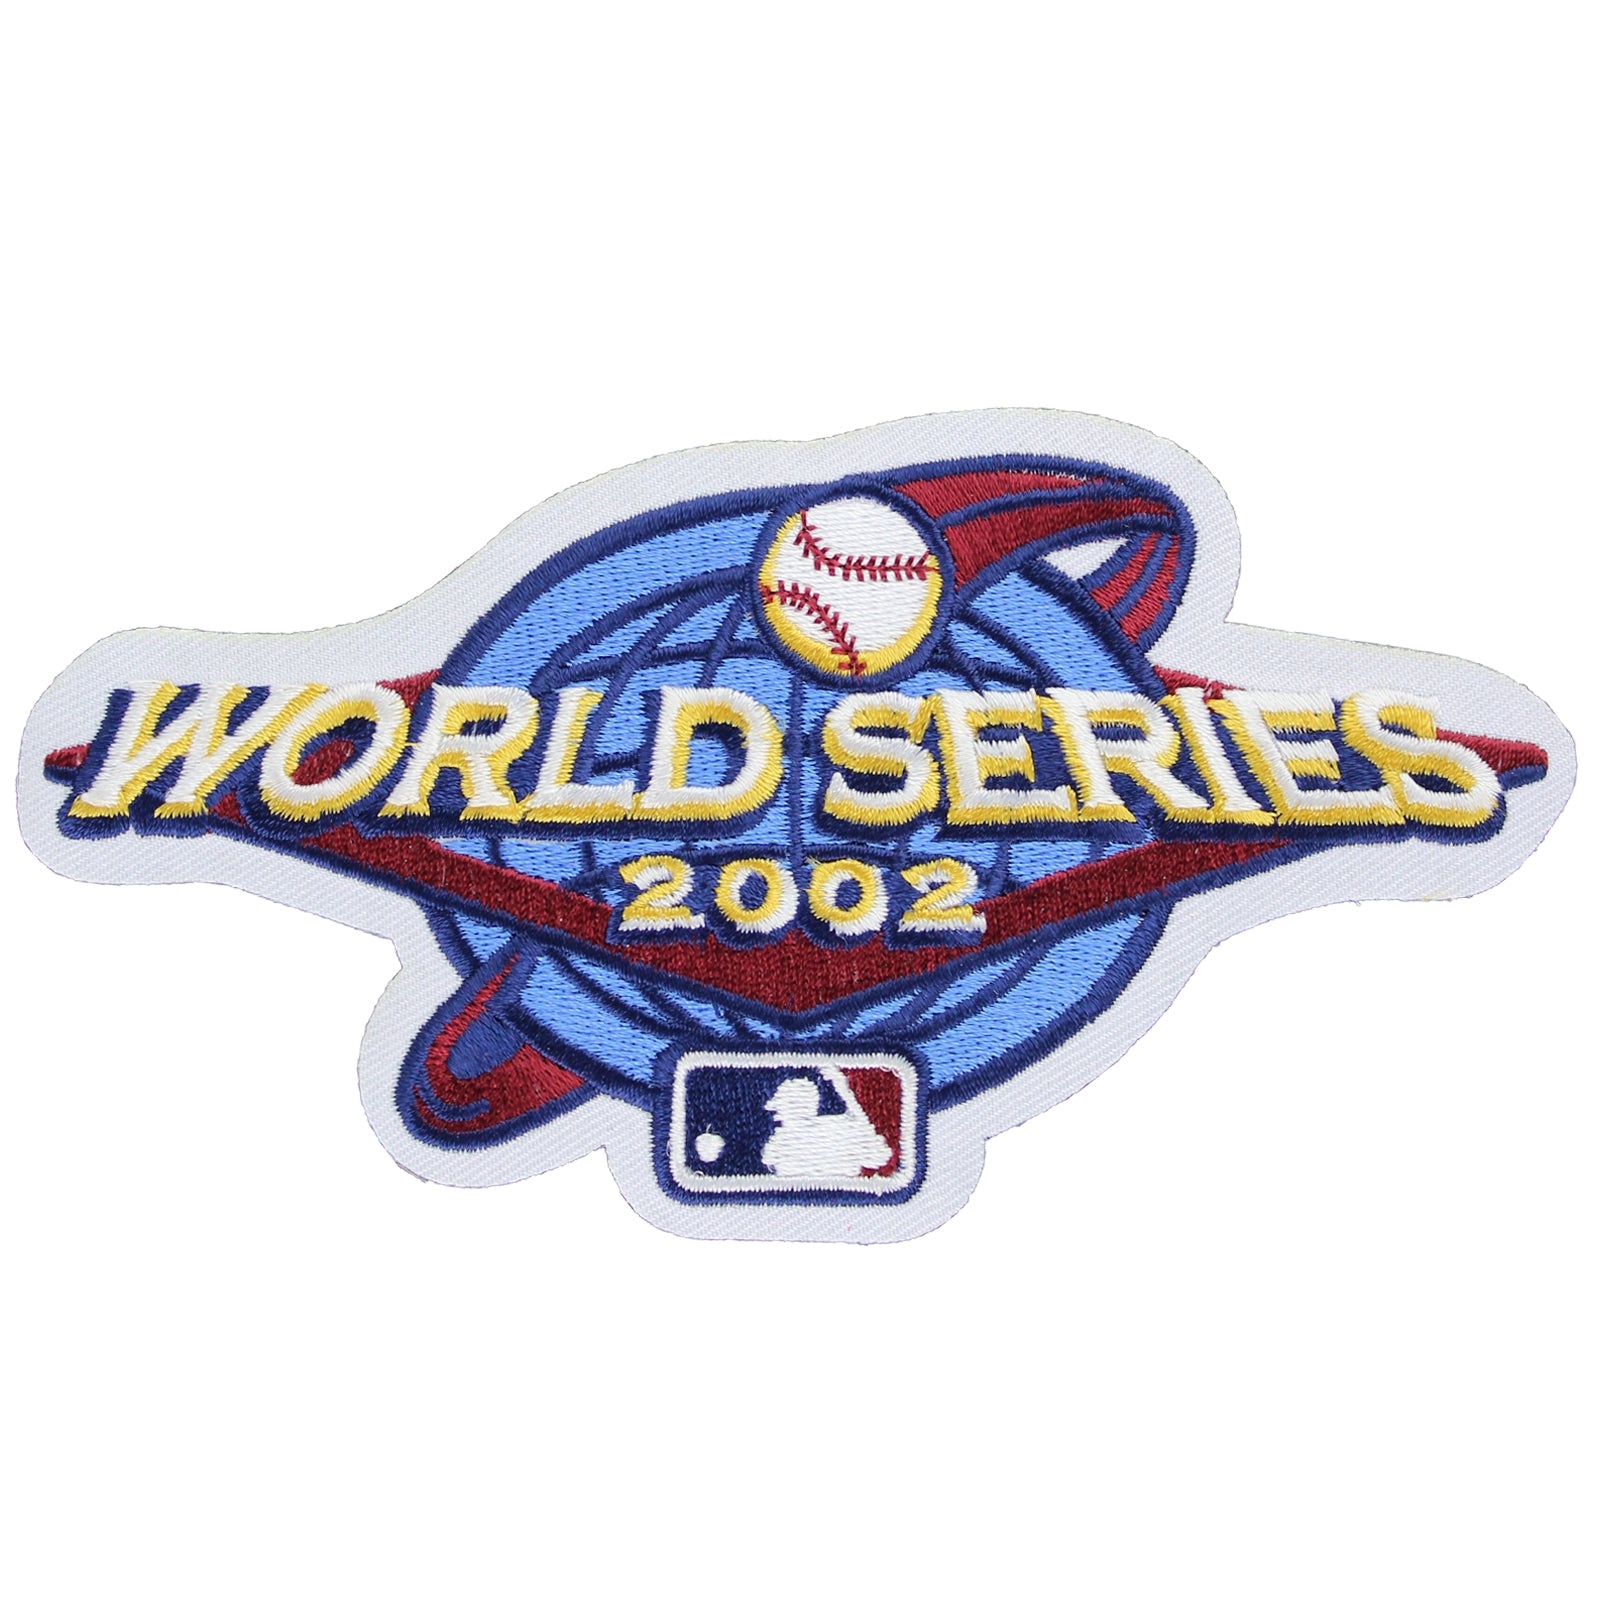 2002 World Series - Wikipedia